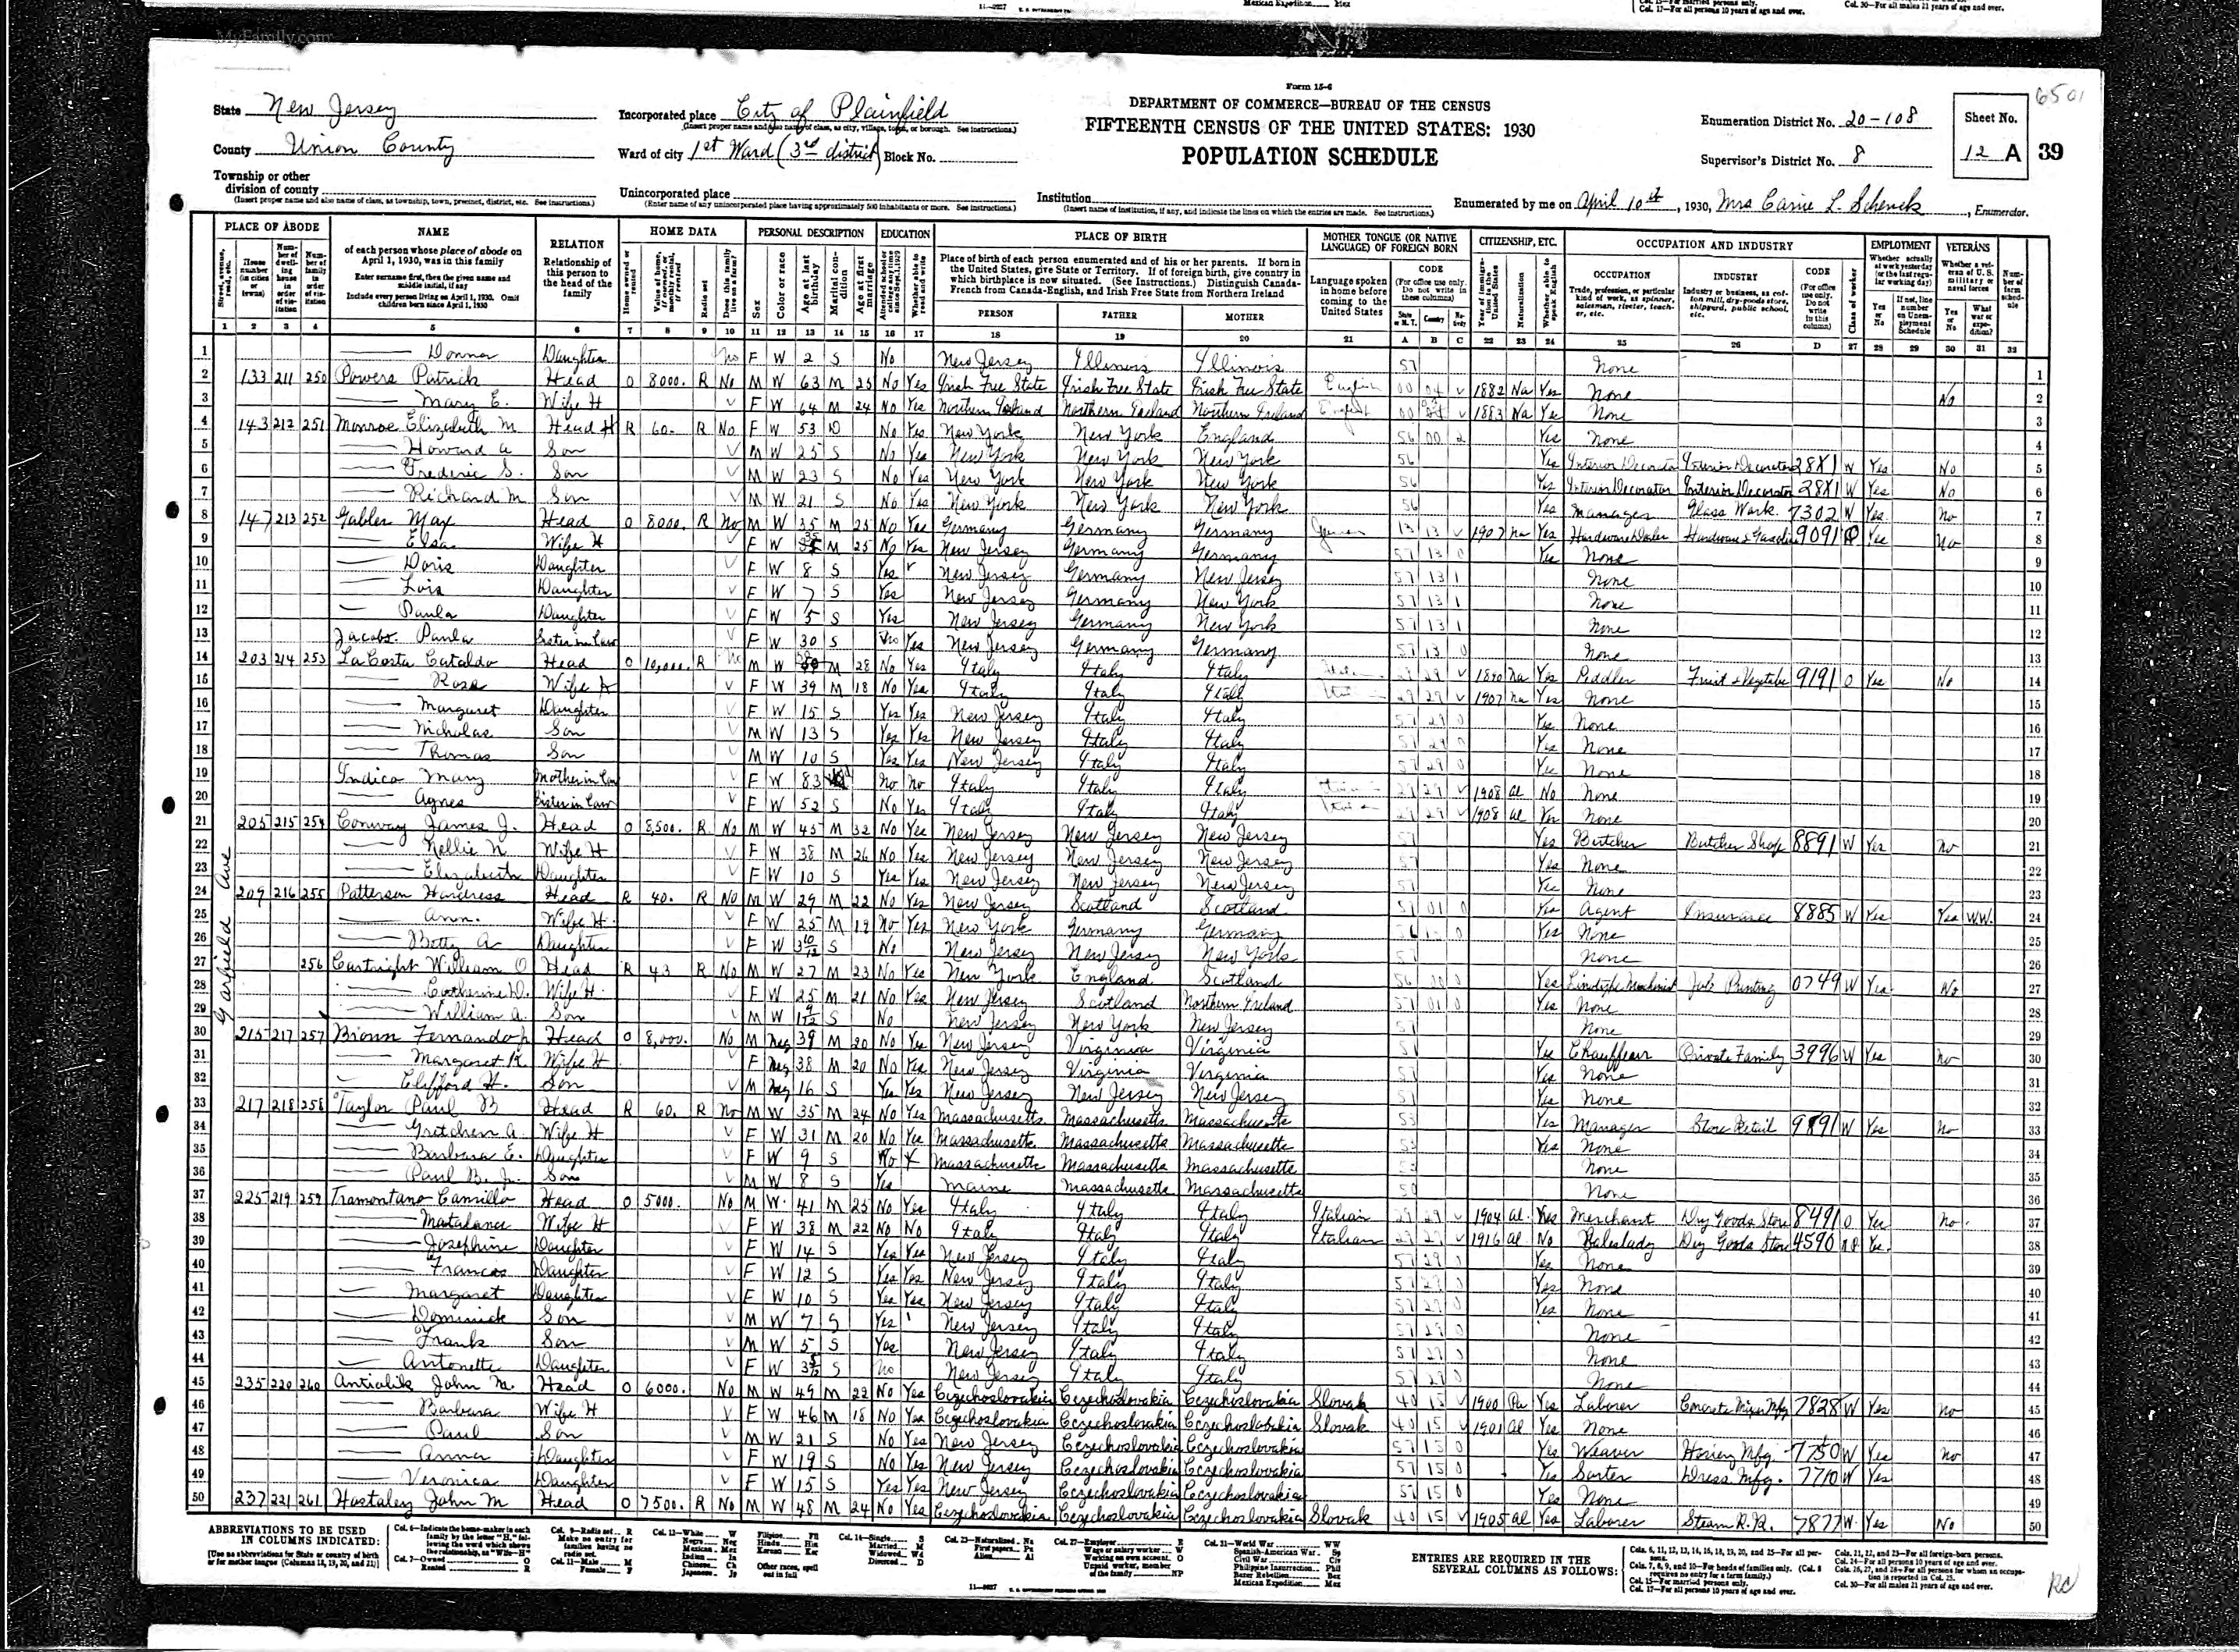 LaCostas in 1930 Census